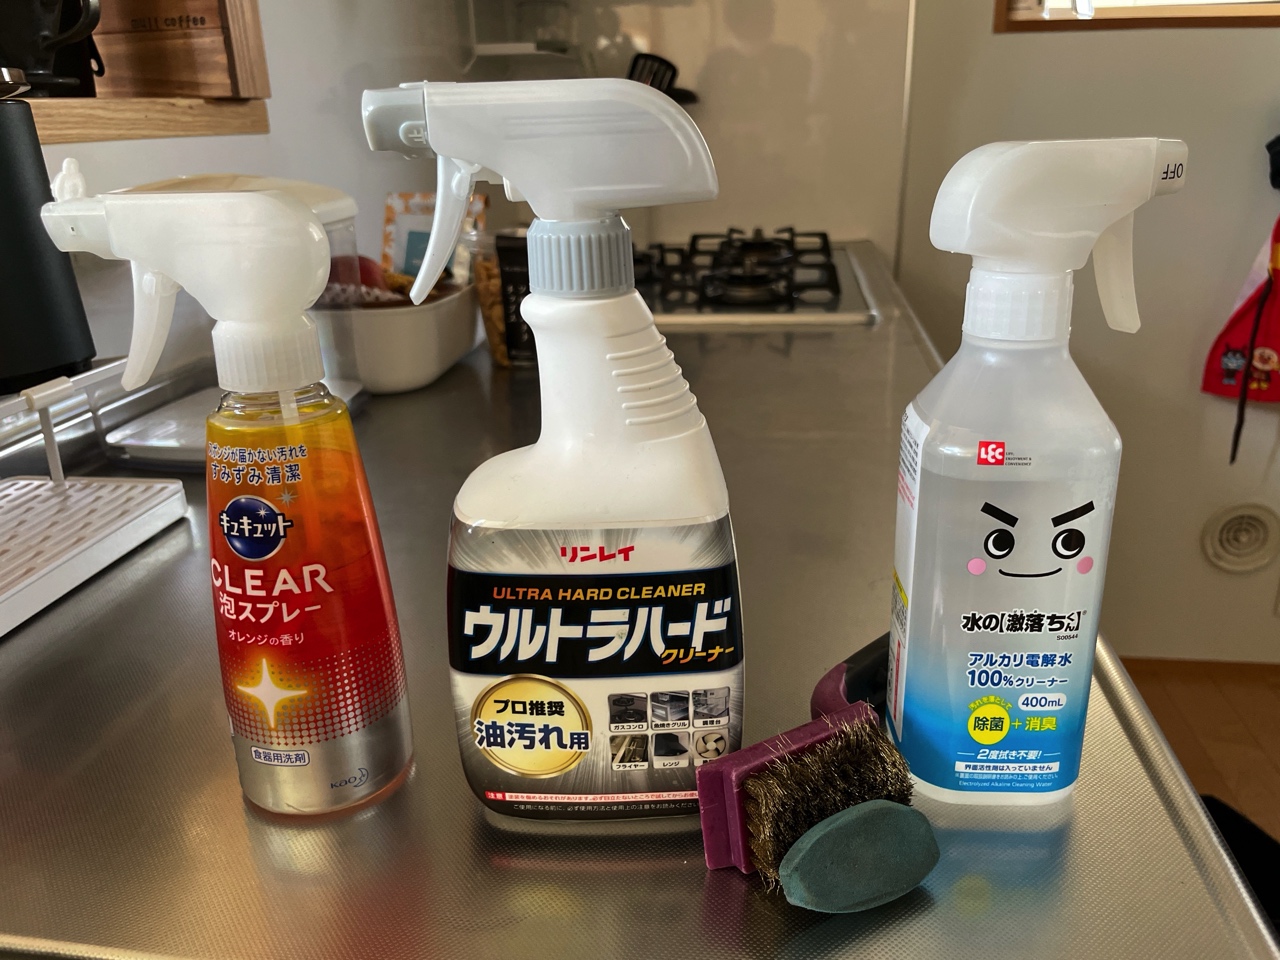 東京ガスの清掃員のプロが使用！ガスコンロの掃除道具5点【おすすめ】 | 無印良品の家のブログ ANNYの木の家